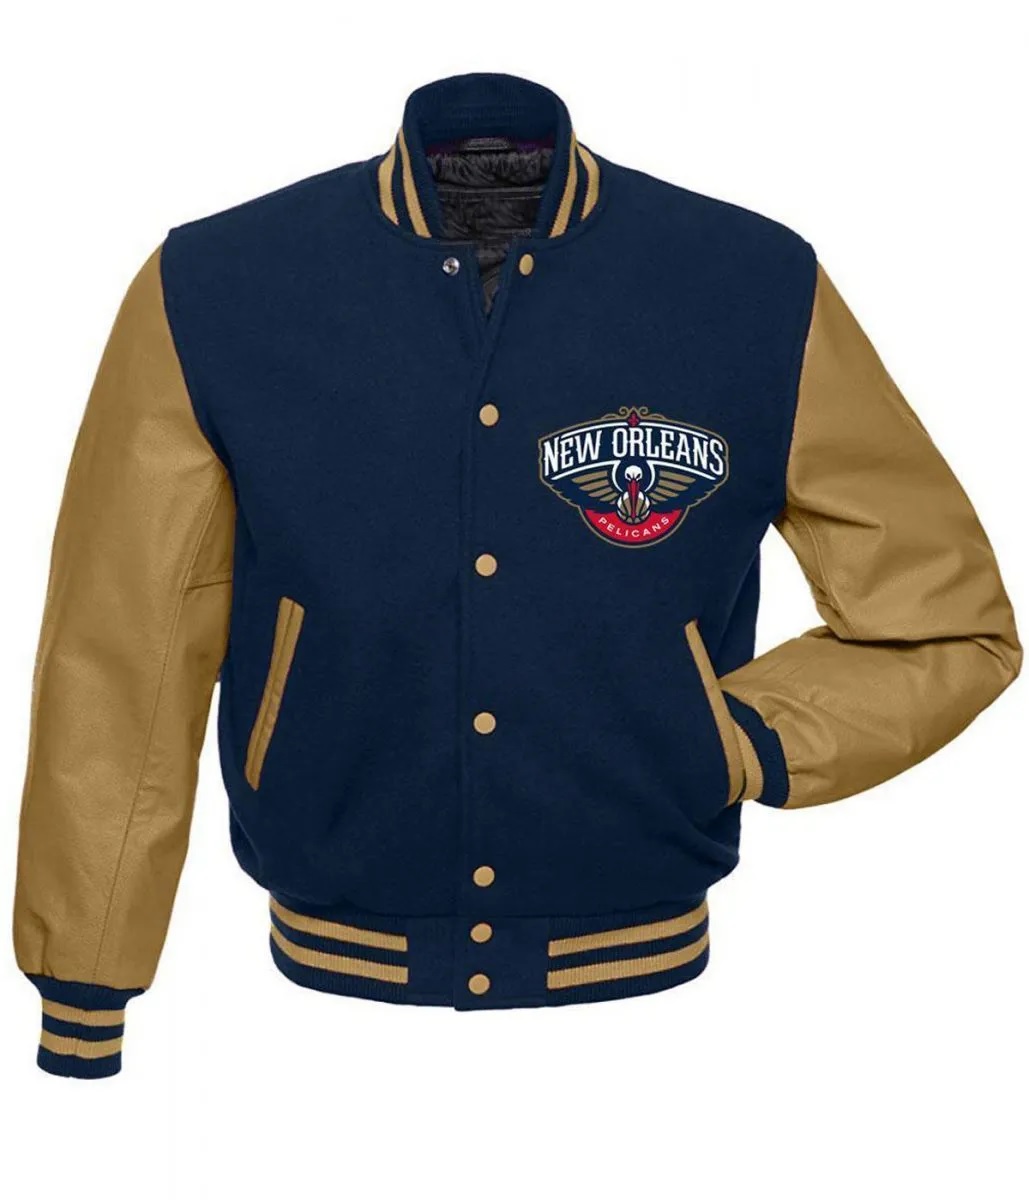 New Orleans Pelicans Letterman Jacket